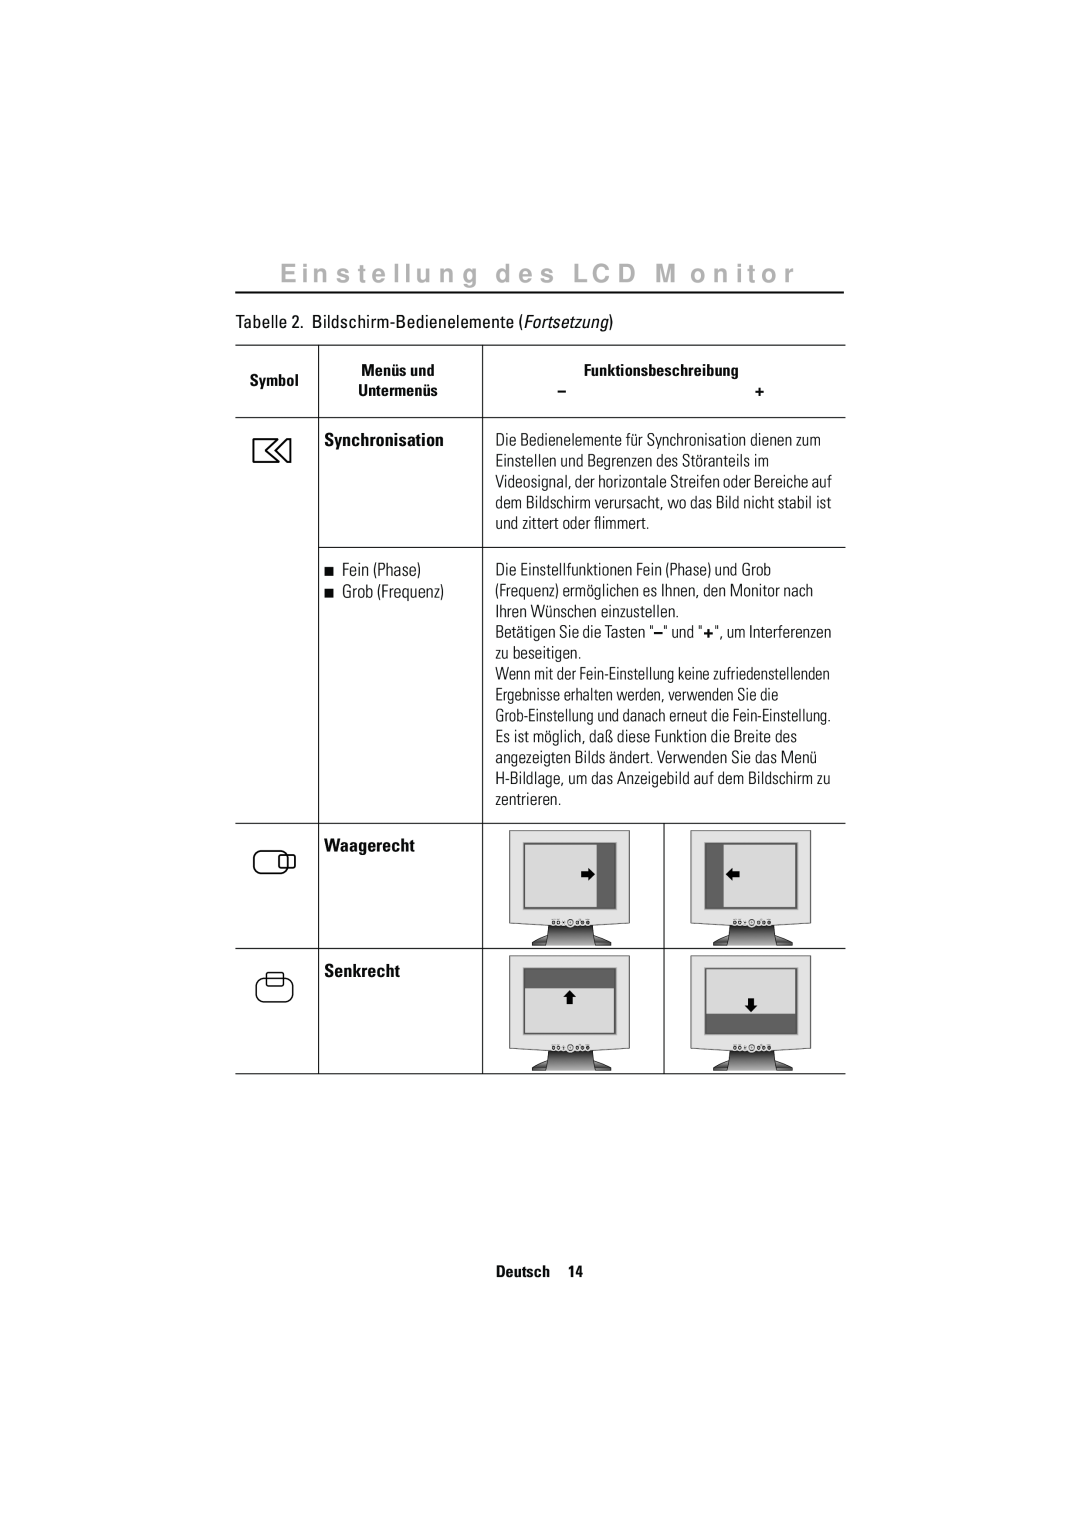 Samsung RN15MSSPN/EDC Synchronisation, Waagerecht, Senkrecht, Einstellung des LCD Monitor, Symbol, Menüs und, Untermenüs 